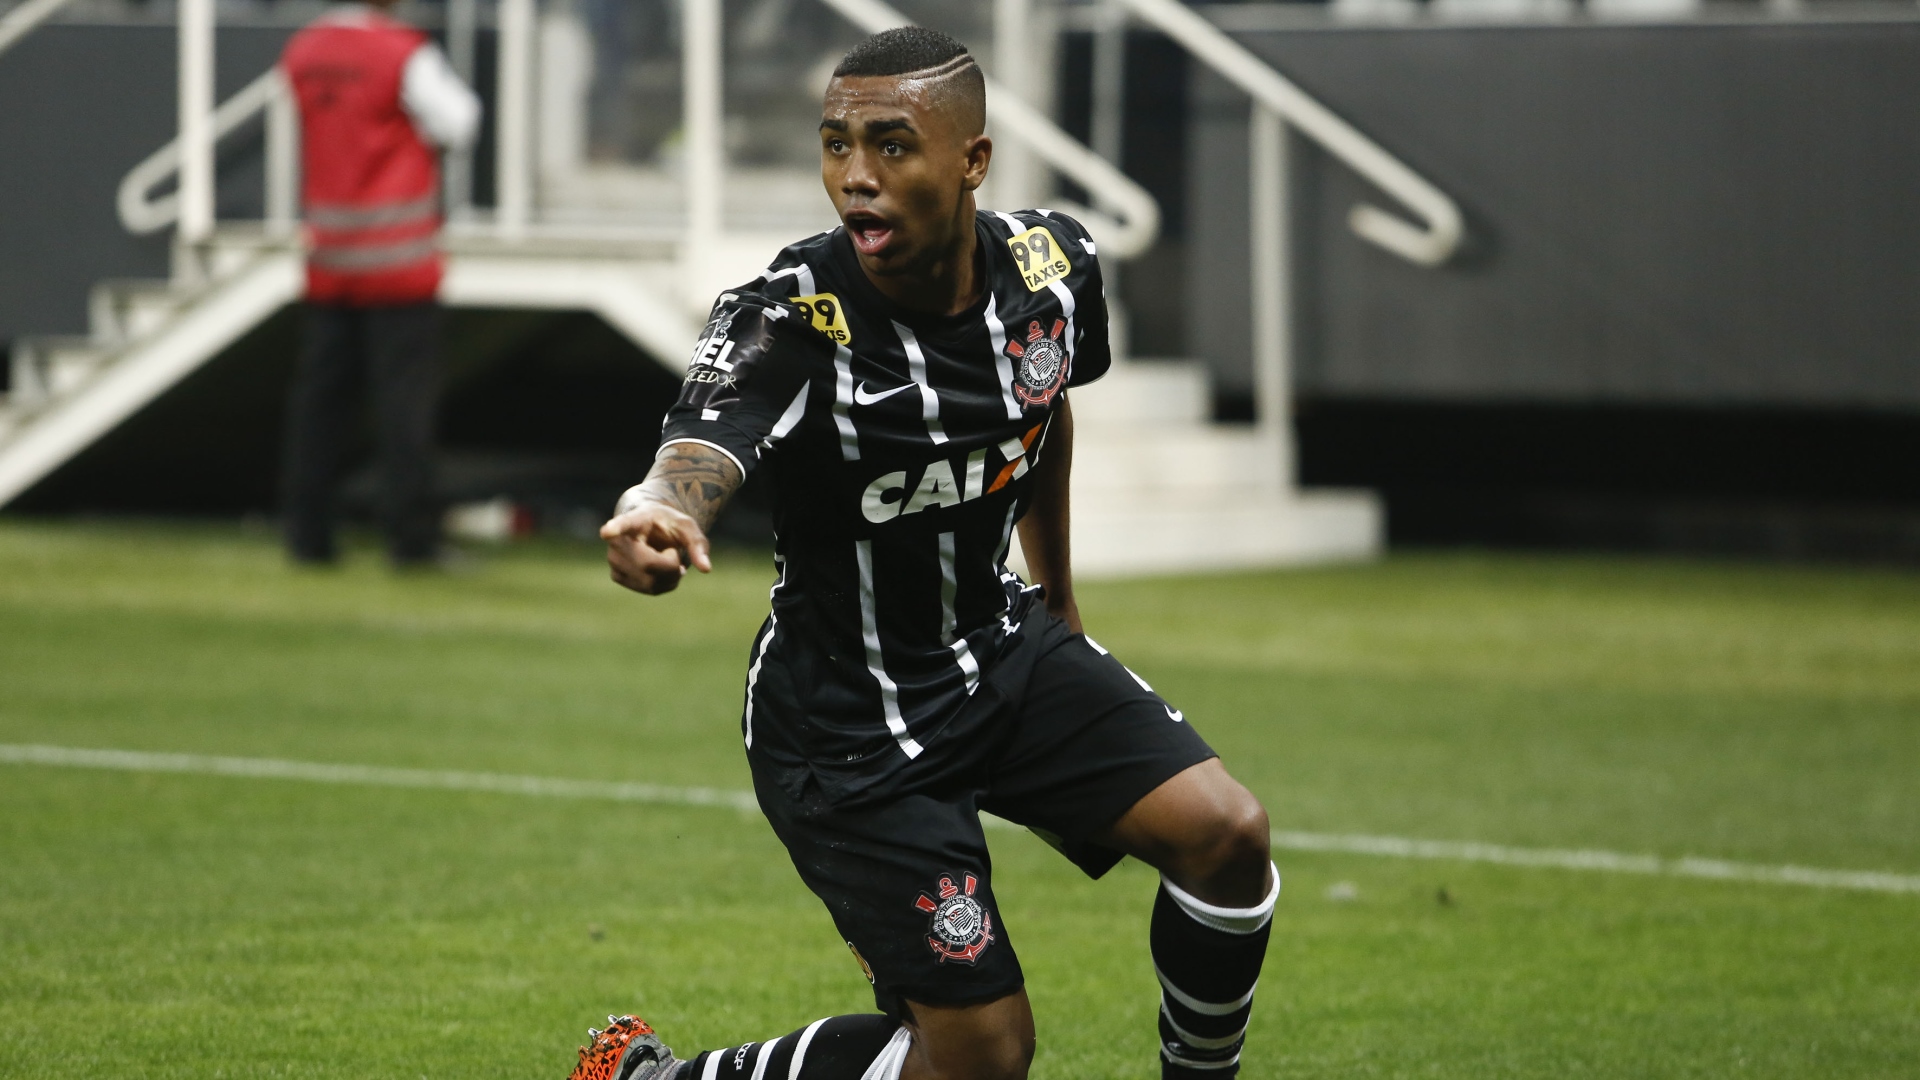 Bressan, Rodrigo Caio, Vitinho, Malcom - Meet 10 of Brazil's potential ...